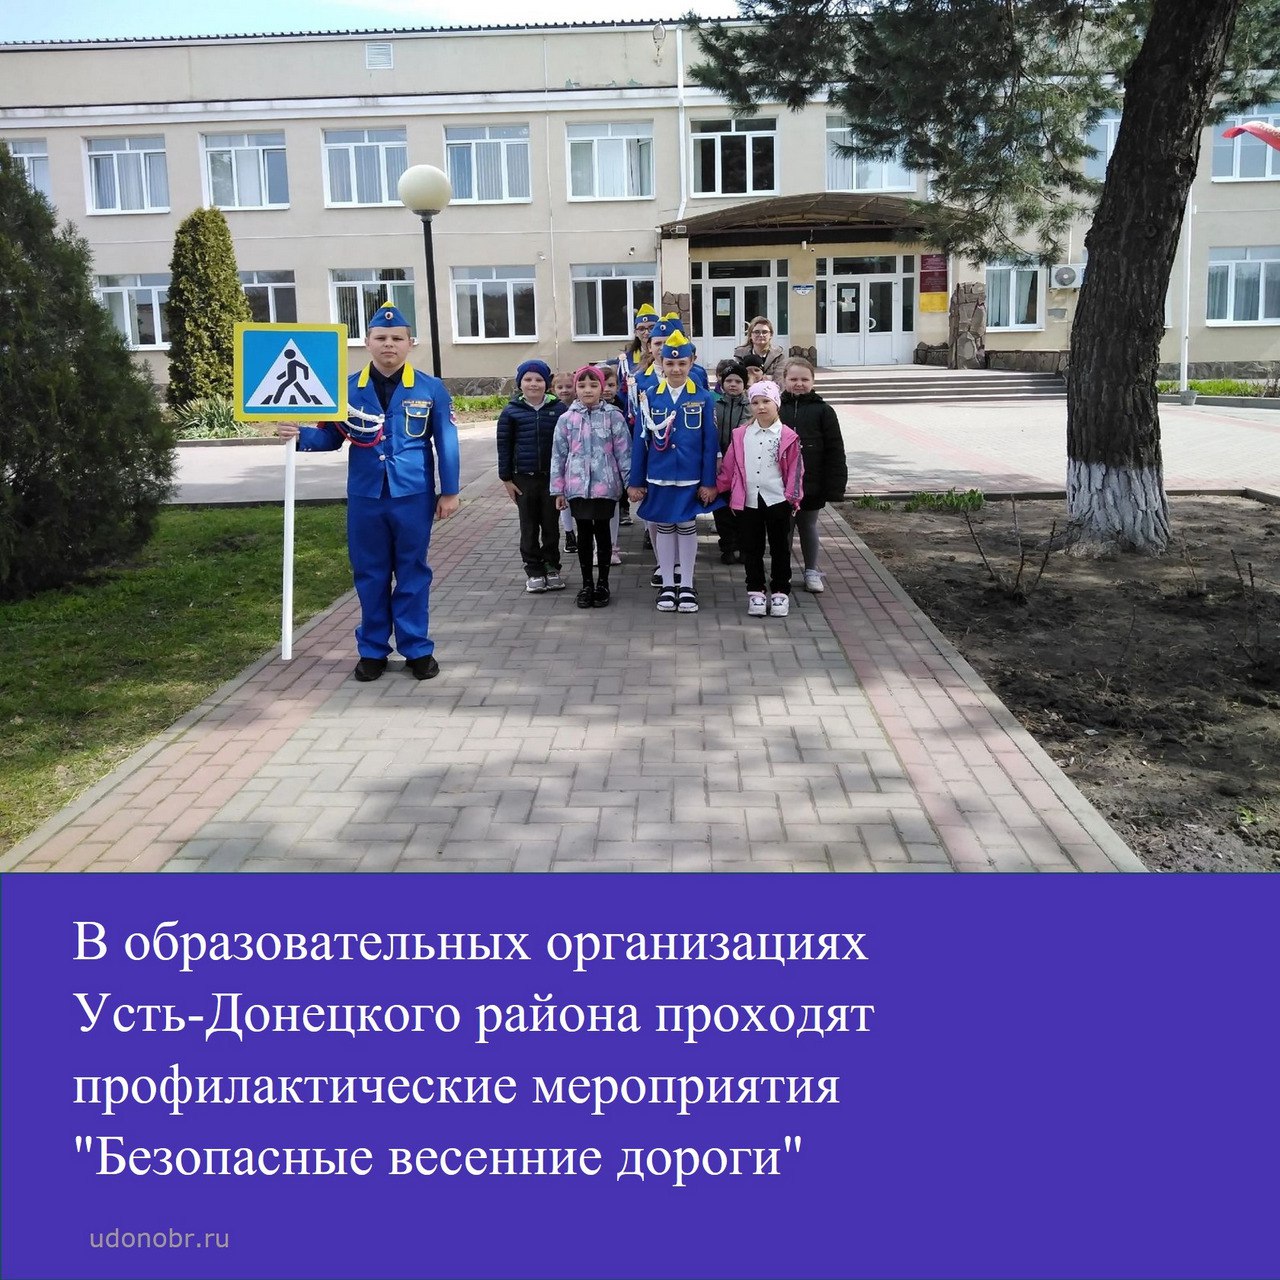 В образовательных организациях Усть-Донецкого района проходят профилактические мероприятия 